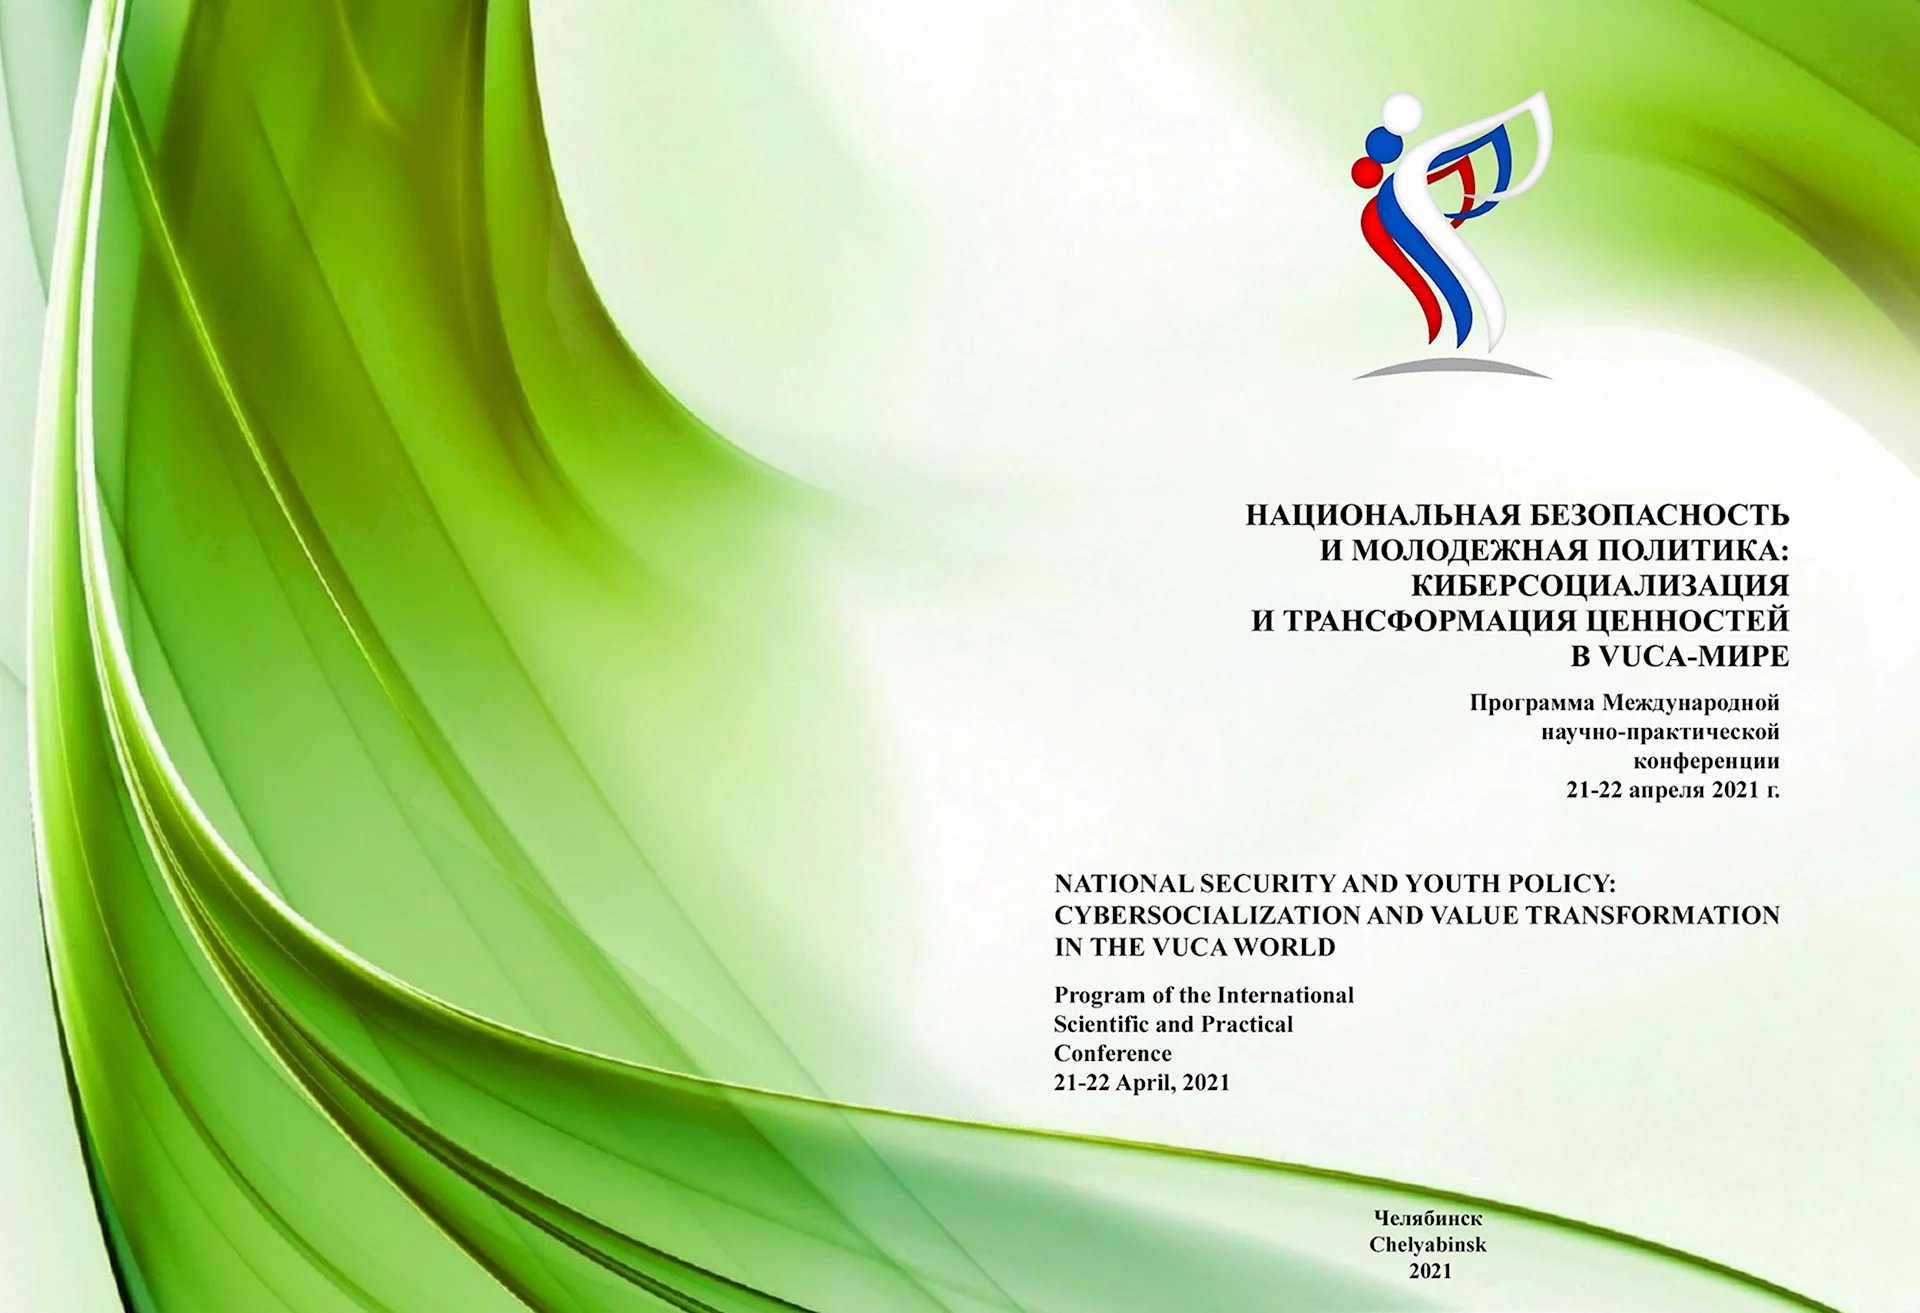 Сертификат научно-практической конференции СПБ Молодежная политика